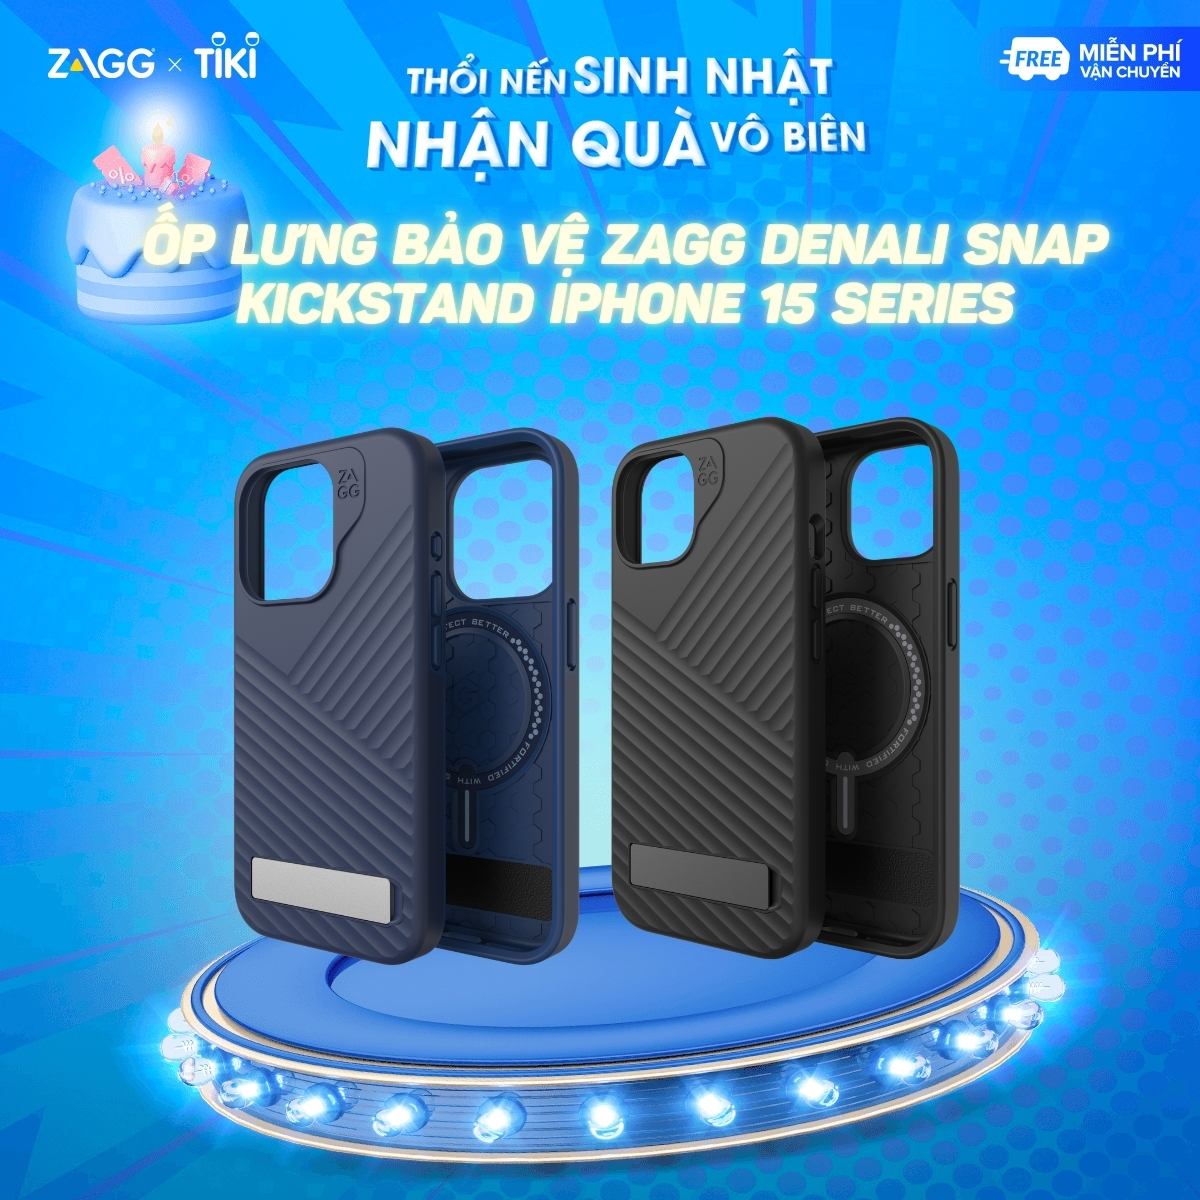 Ốp lưng bảo vệ ZAGG Denali Snap Kickstand cho iPhone 15 Series - chống sốc tới 5m - bảo hành 1 năm - Hàng chính hãng